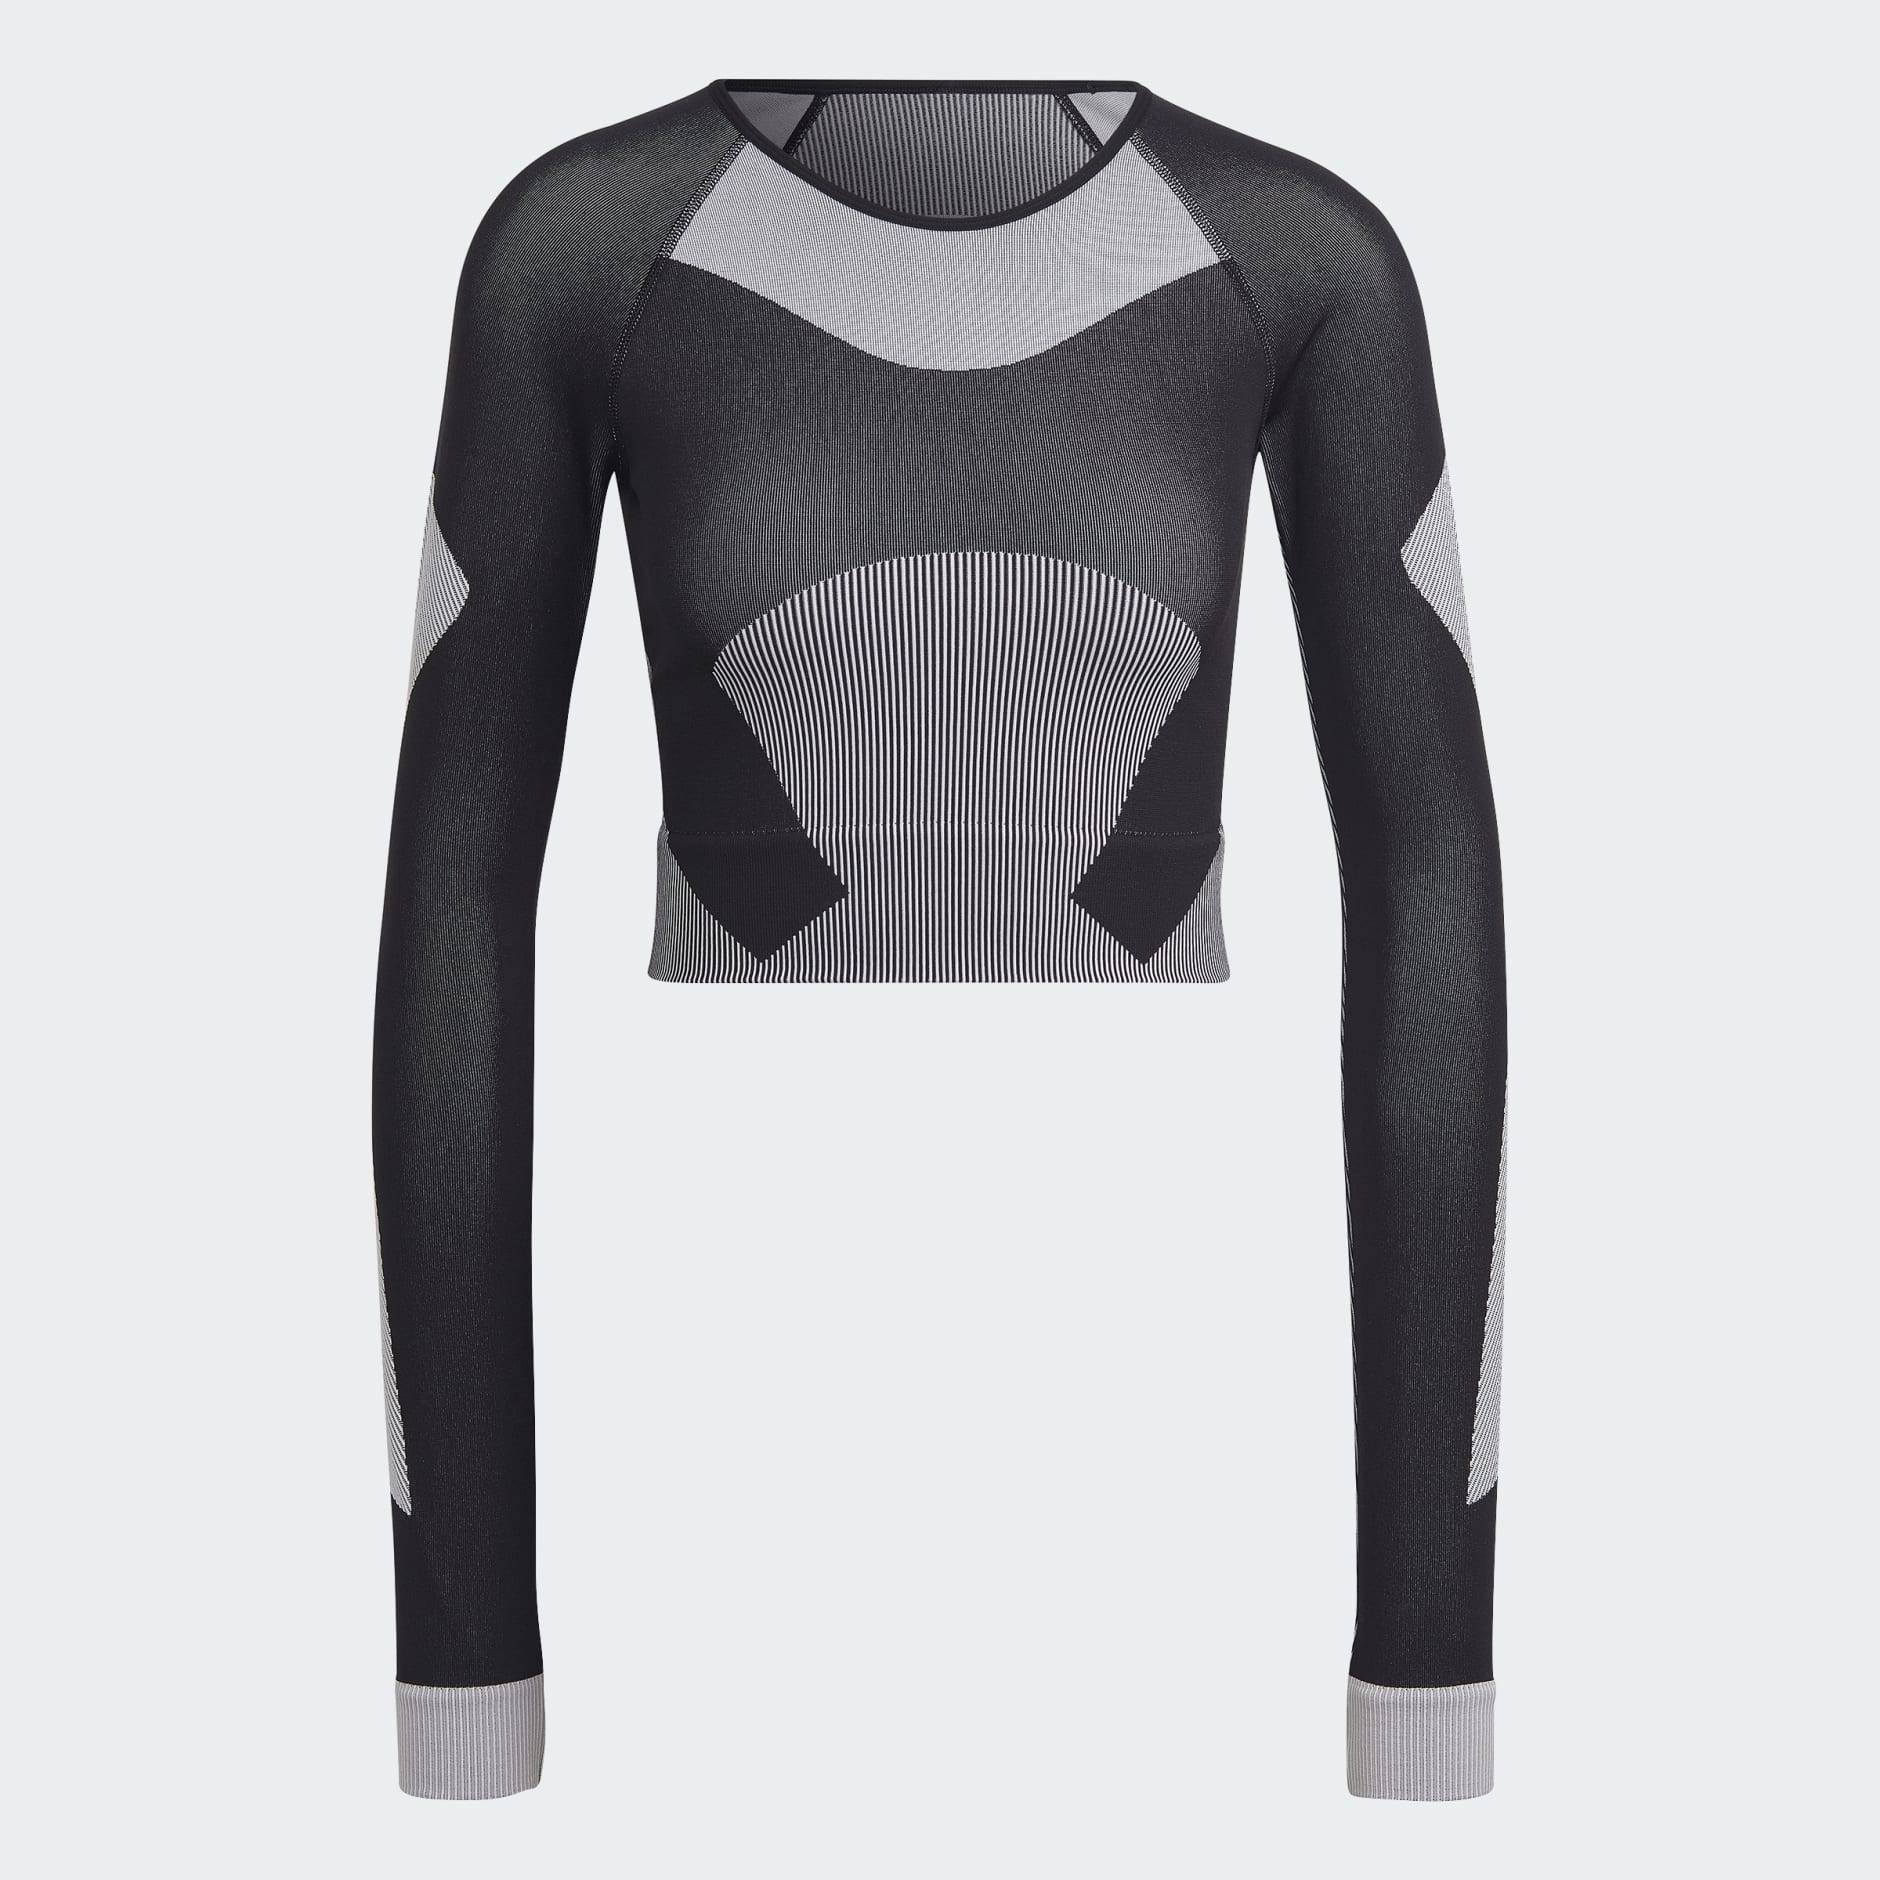 Clothing - adidas by Stella McCartney TrueStrength Yoga Crop Top ...